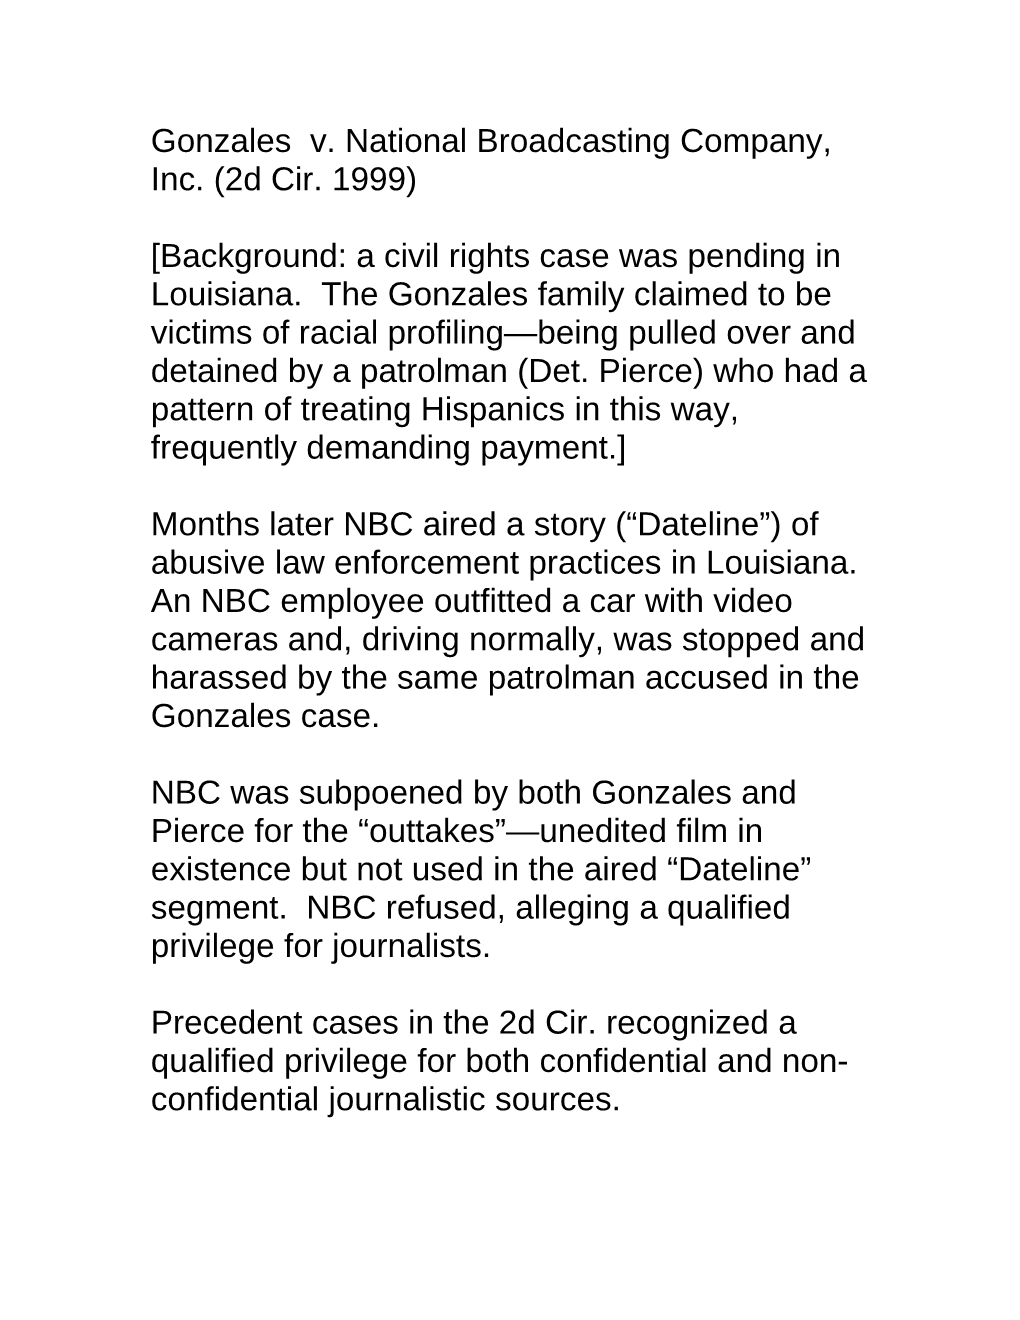 Gonzales V. National Broadcasting Company, Inc. (2D Cir. 1999)